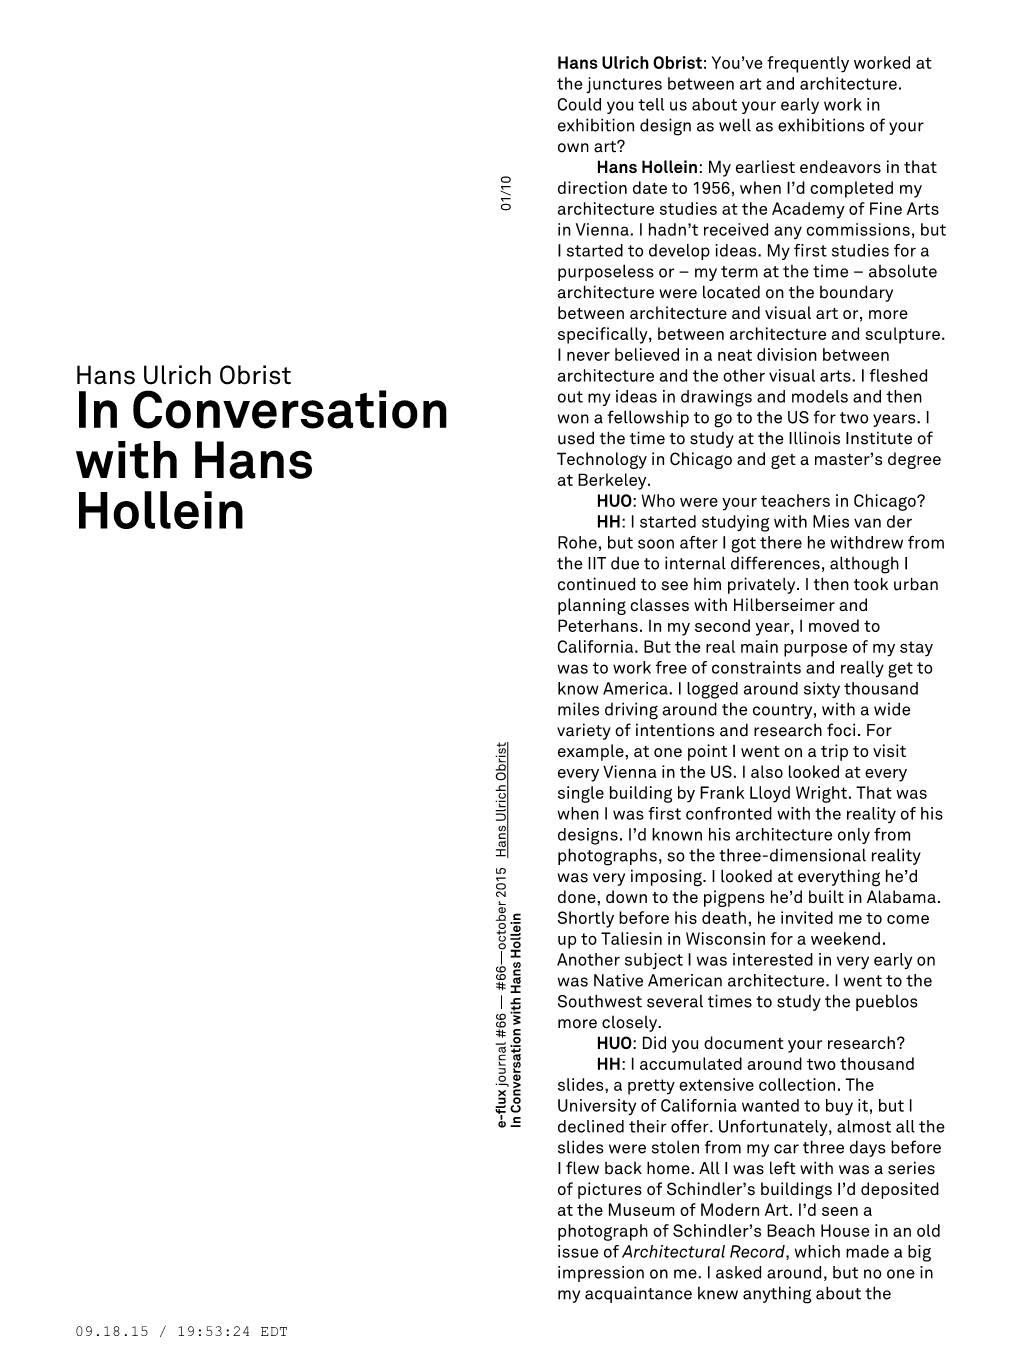 In Conversation with Hans Hollein